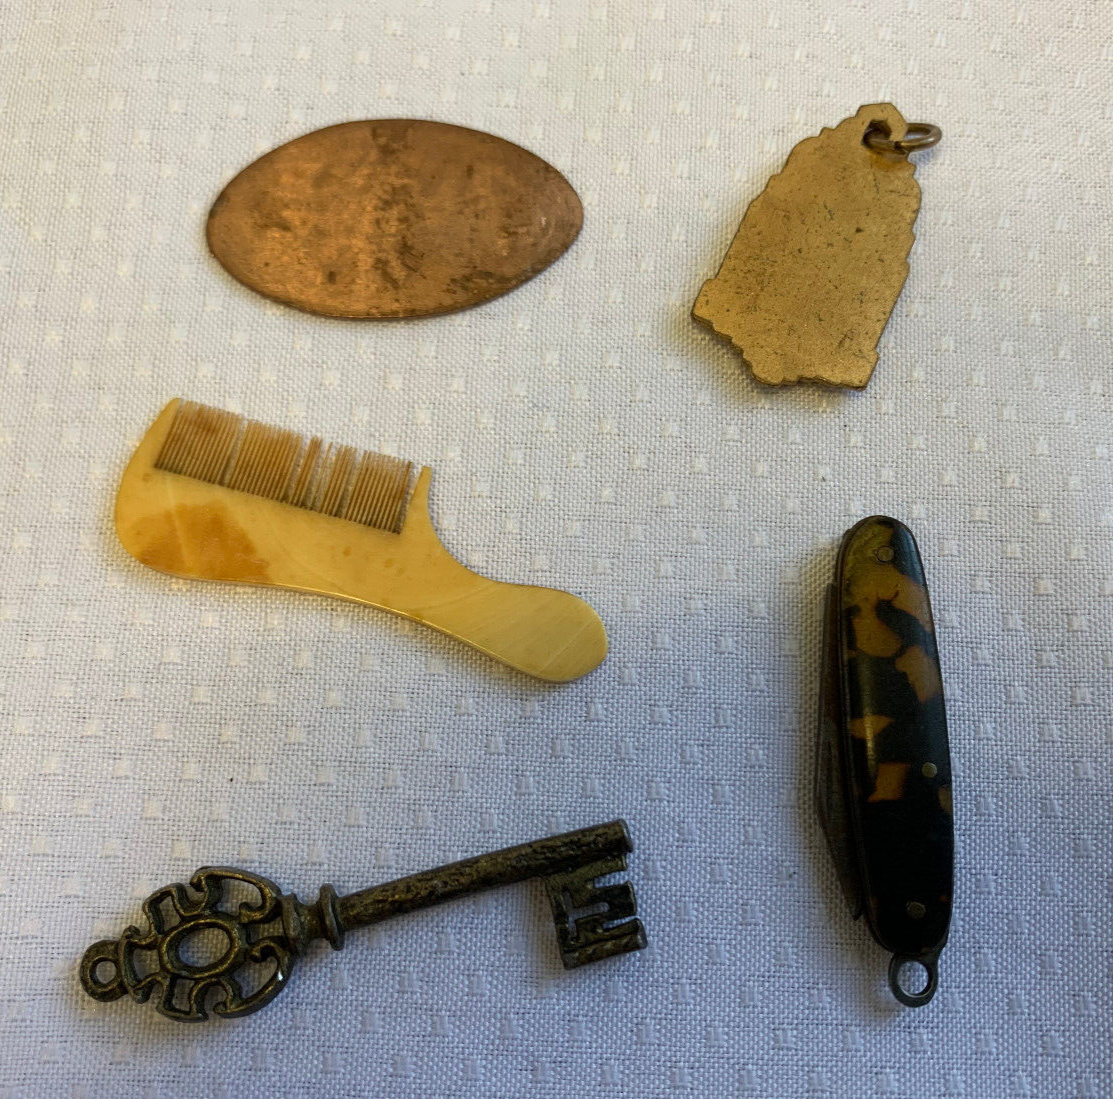 Antique Vtg Trinket Lot Bottle Tokens Coins Lock Ring Pocket Knife Collectibles Без бренда - фотография #17